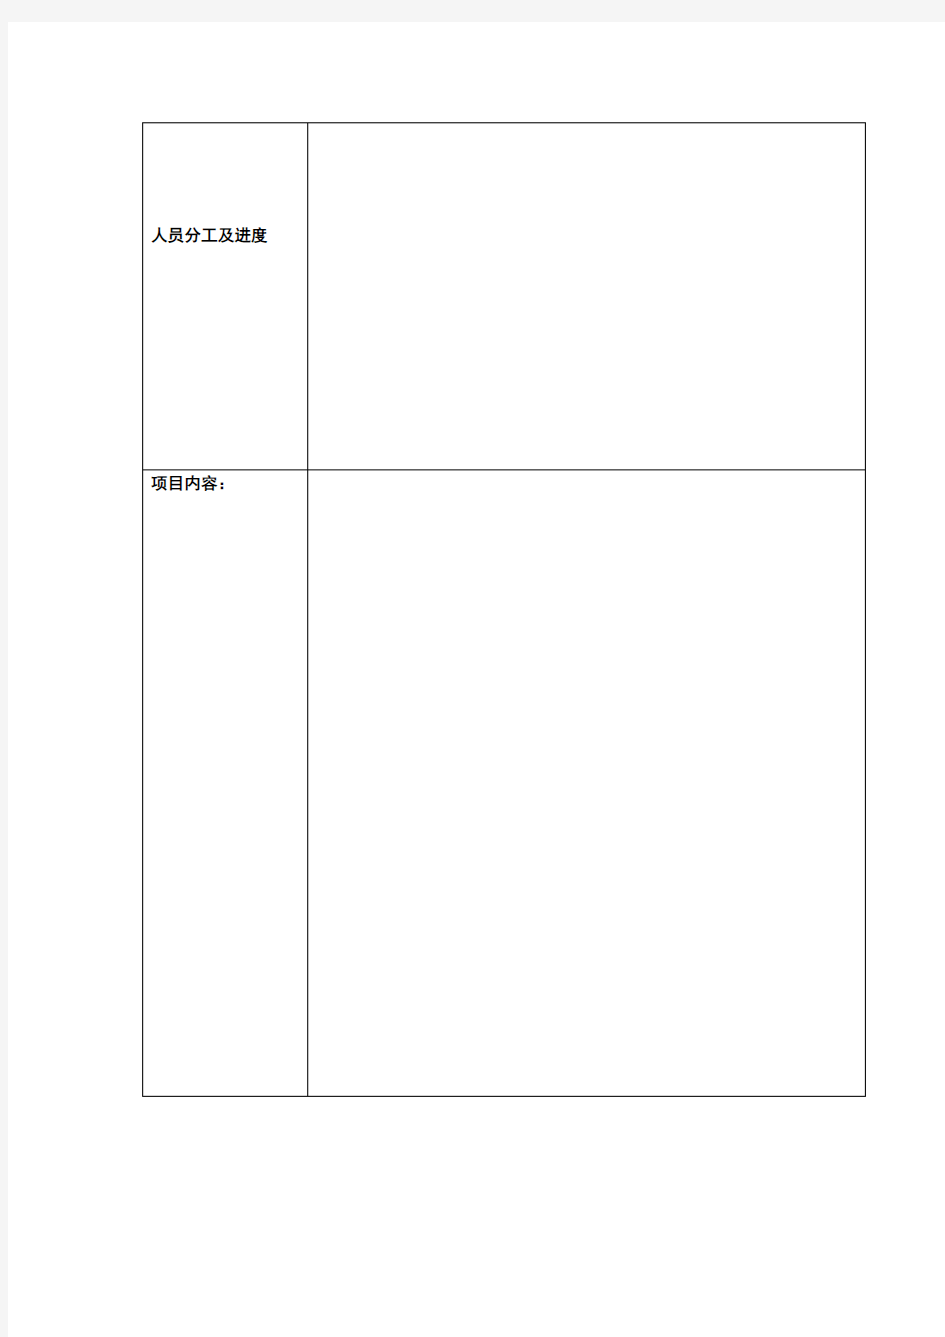 包装设计项目任务书(表)